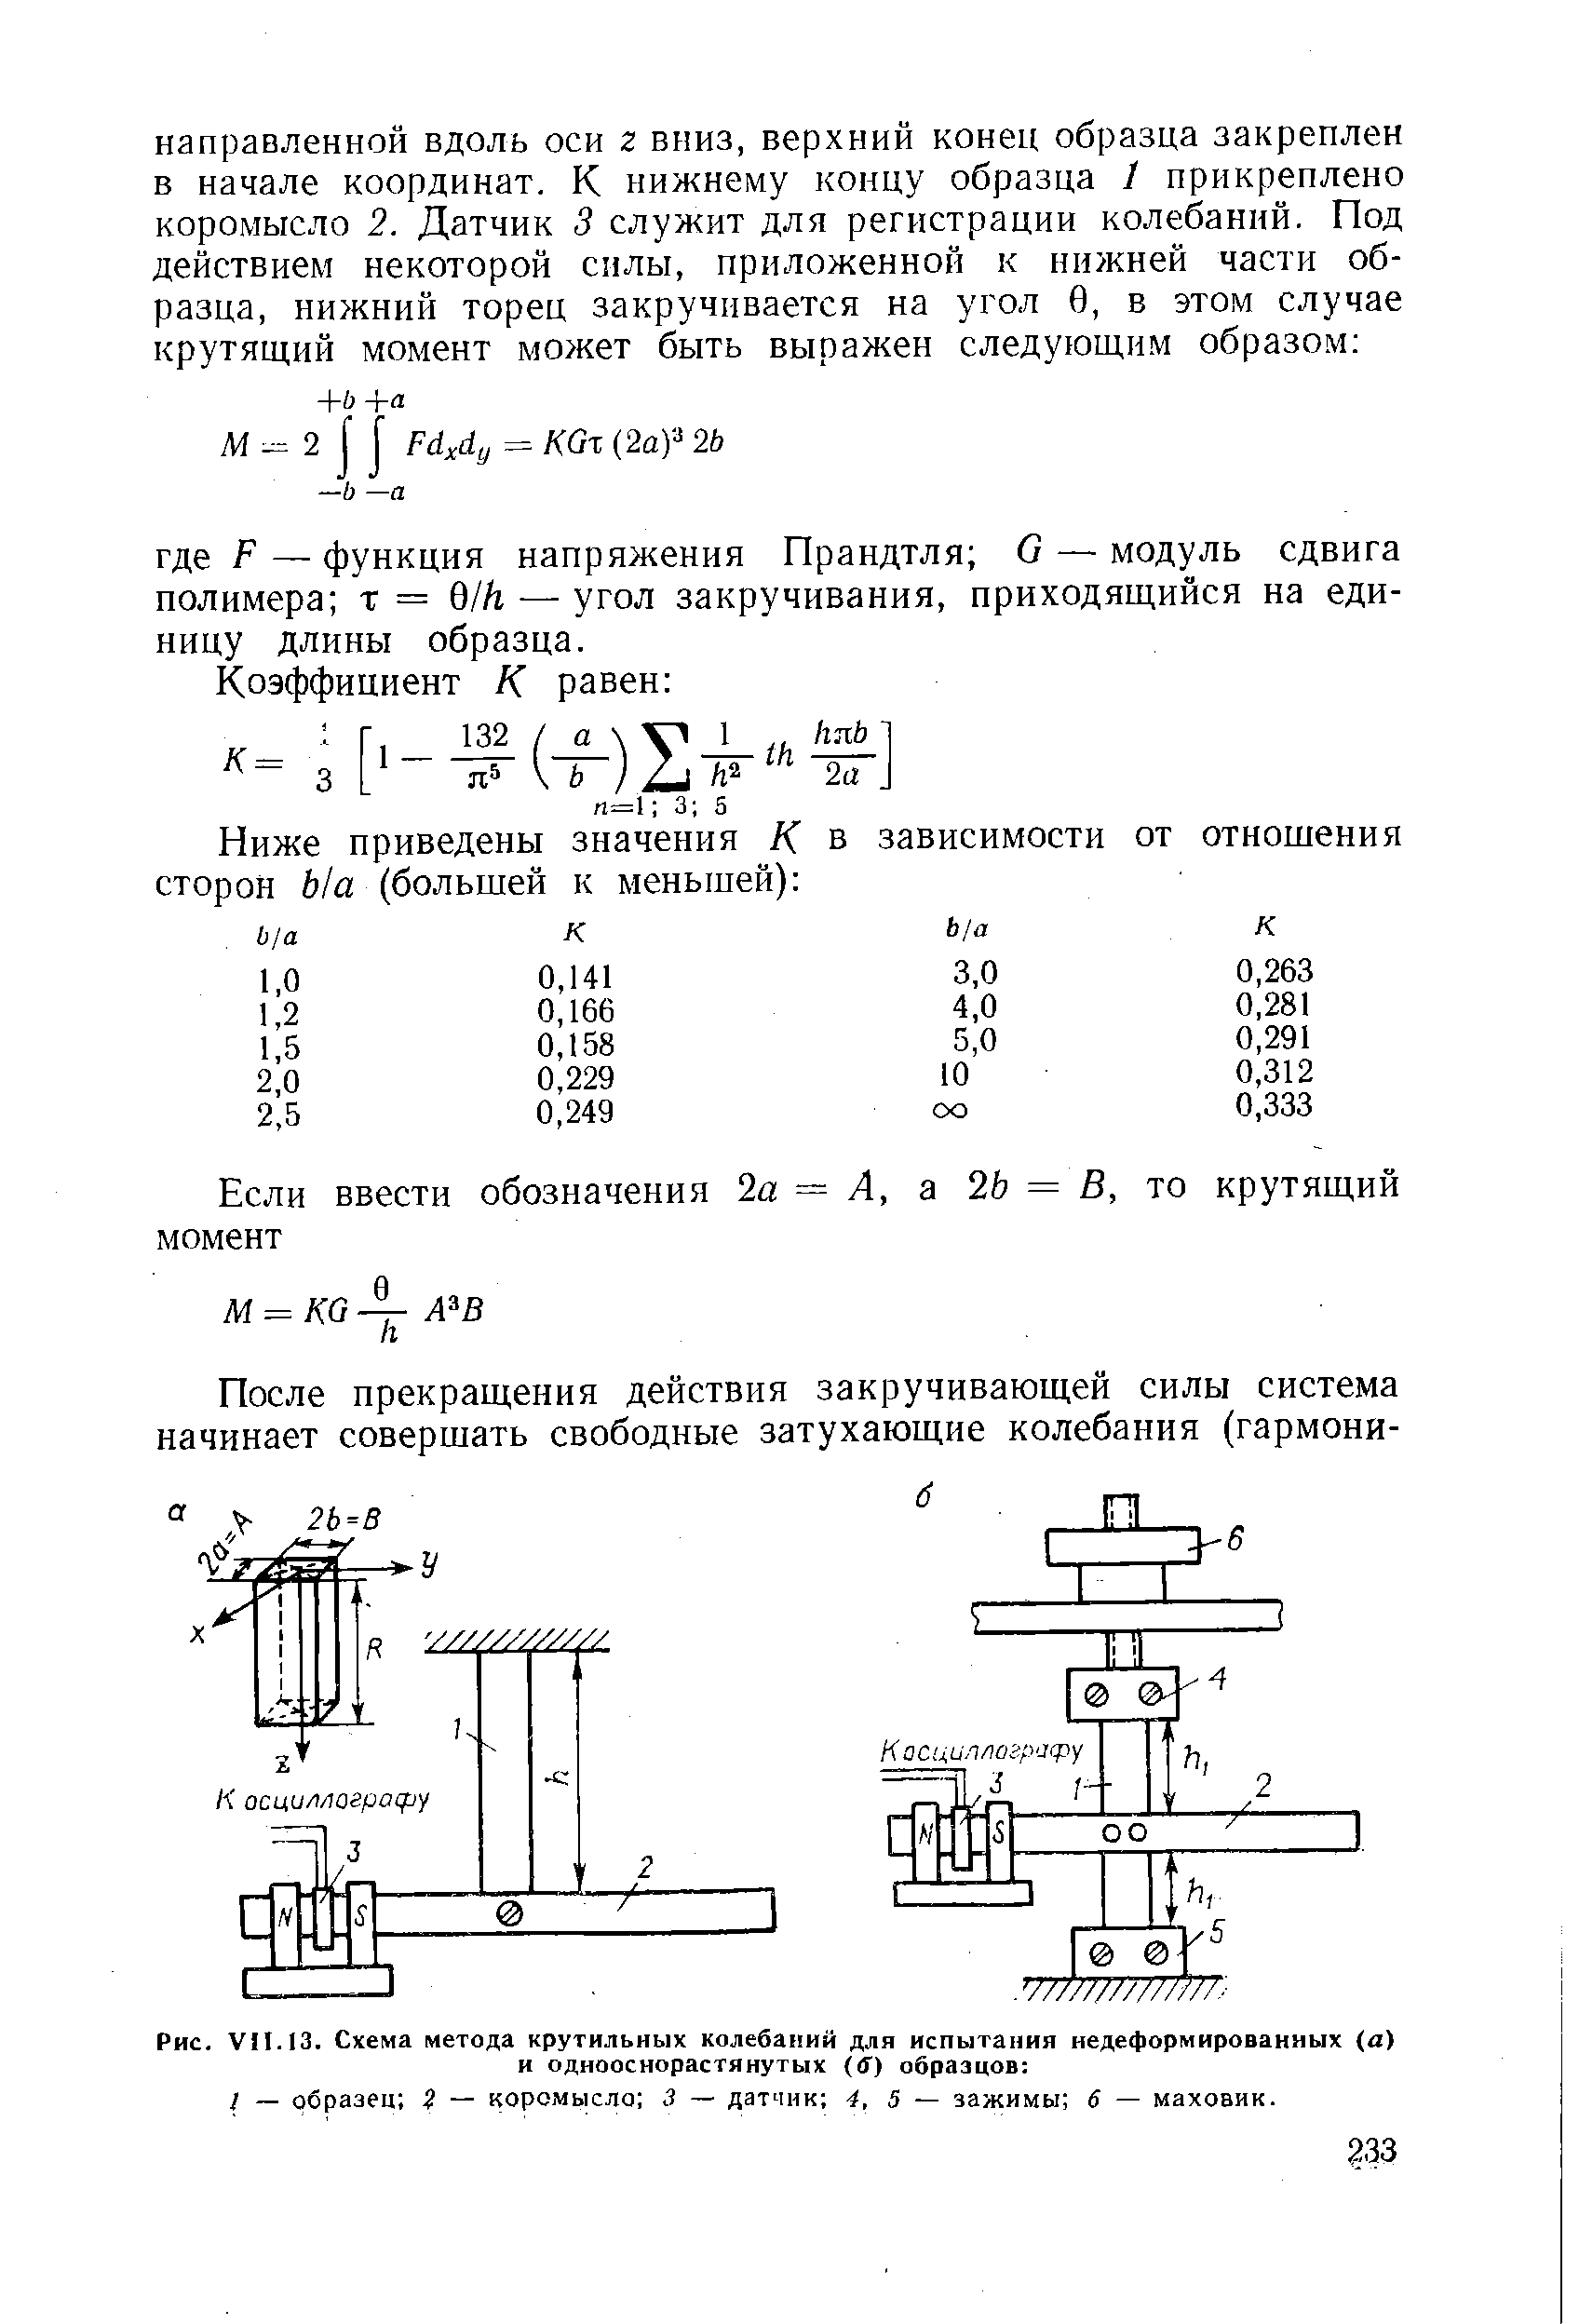 Рис. VII. 13. Схема метода крутильных колебаний для испытания недеформированных а) и однооснорастянутых (б) образцов 
